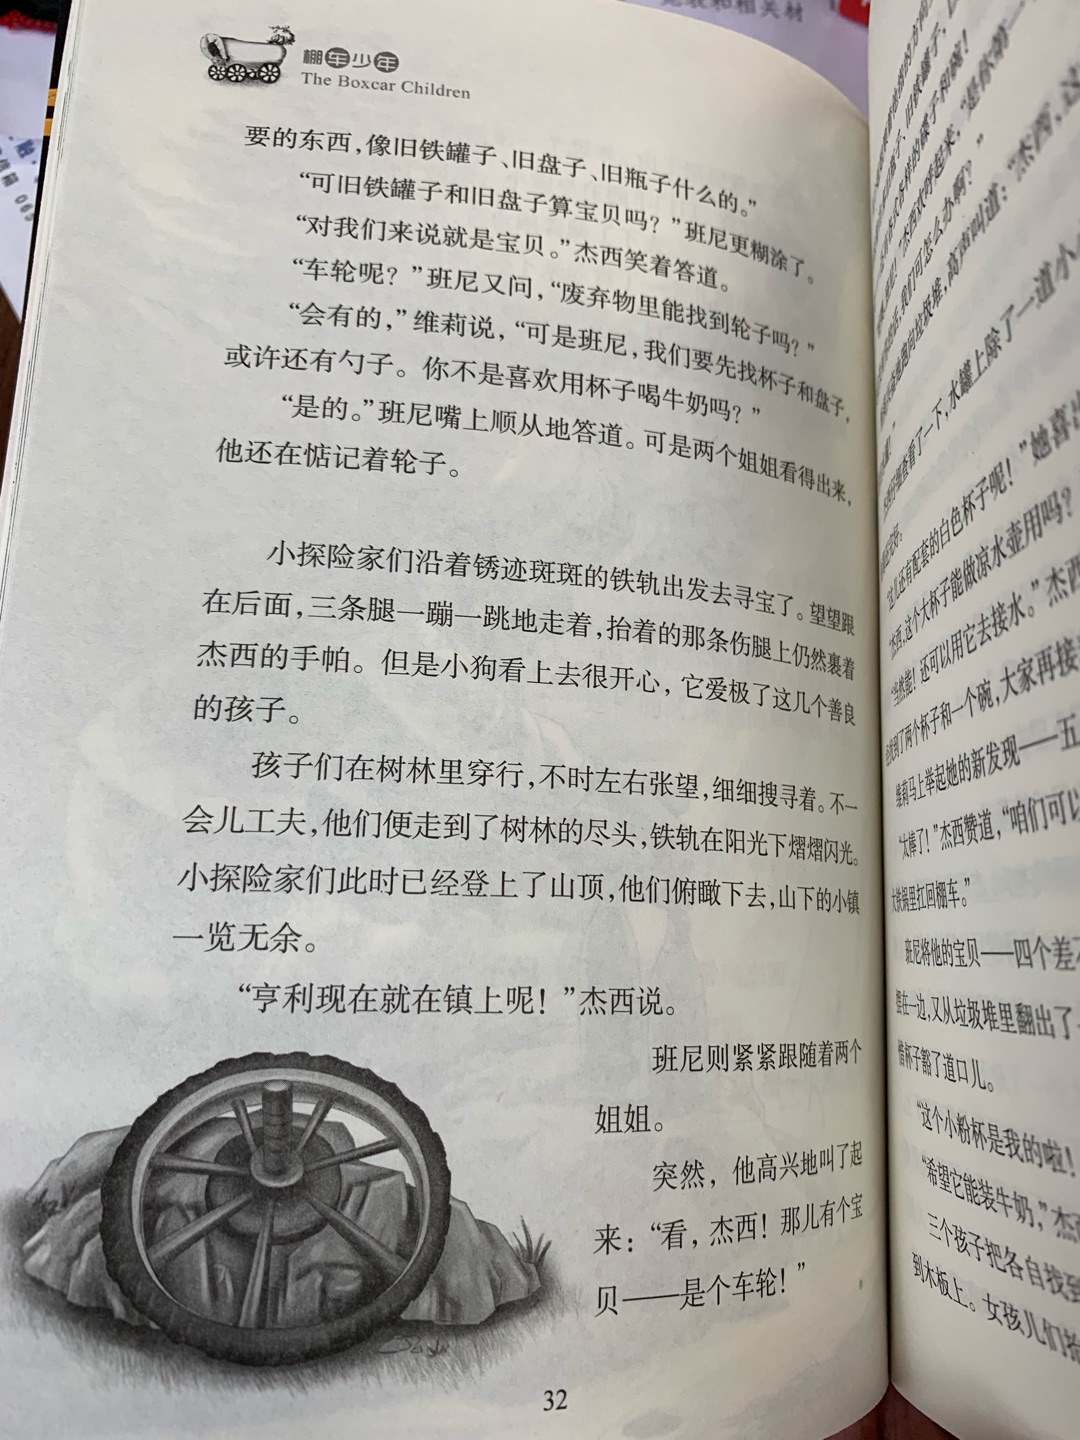 盒子比想象的小，基本是32开大小。第一辑中包含中文版1-4以及英文版1-4，英文版每章节有二维码，可扫码听音频。